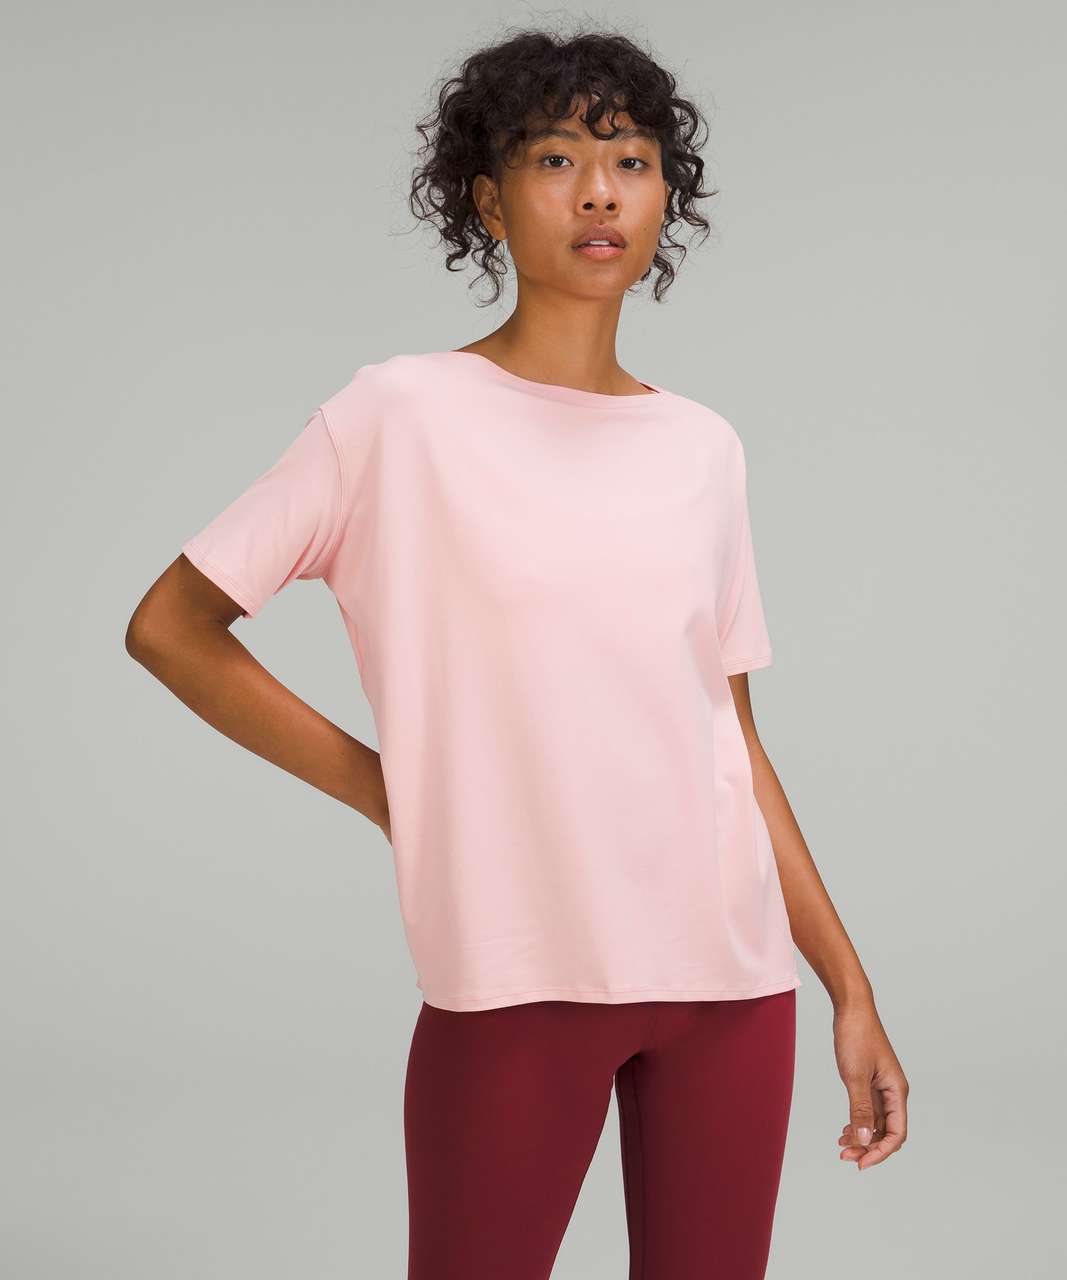 Lululemon Back in Action Short Sleeve T-Shirt *Nulu - Dew Pink